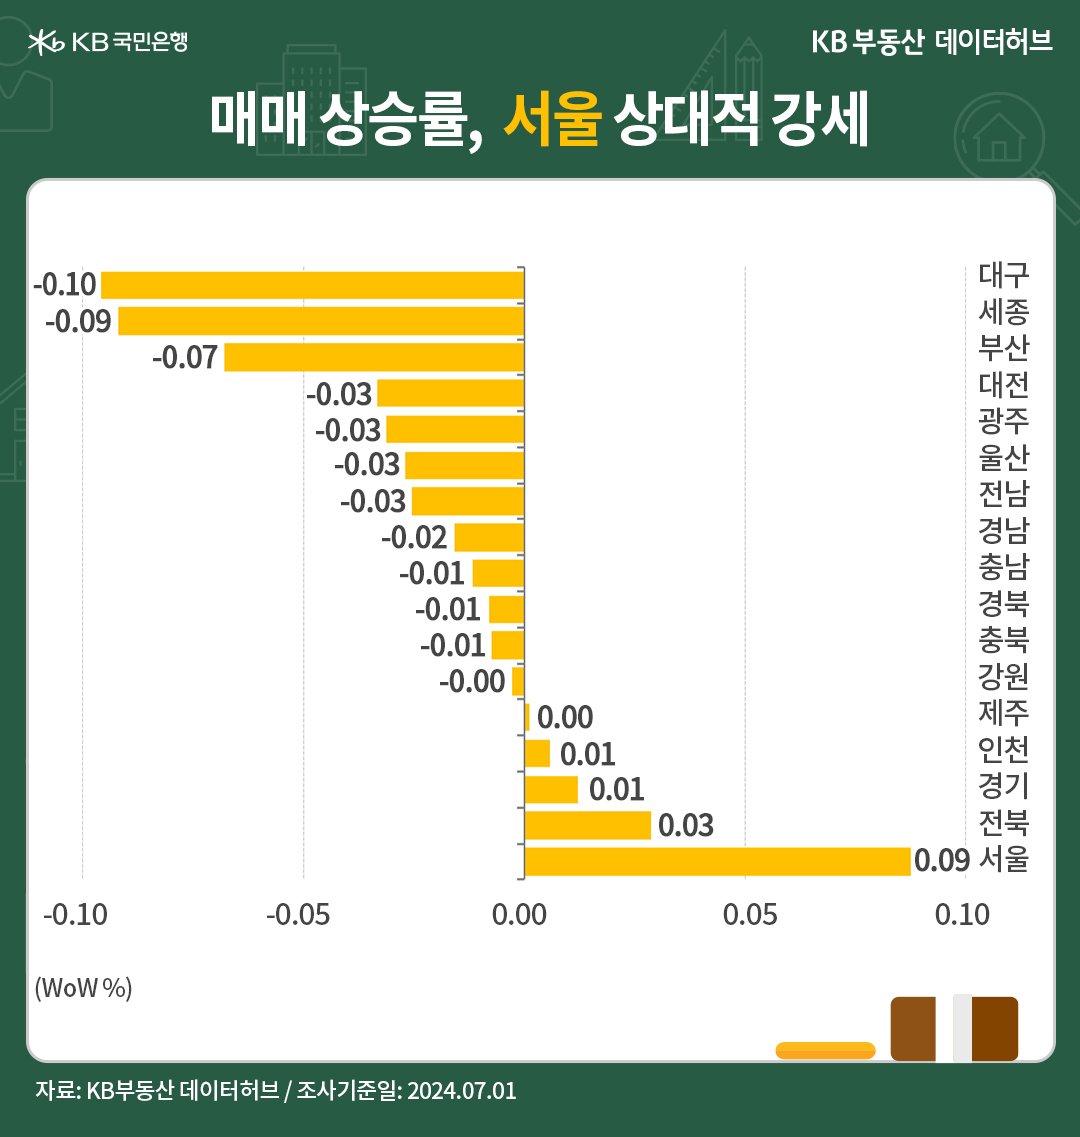 '서울 매매가격'이 7주째 상승세를 이어가면서 상승 강도도 꾸준합니다. '수도권'도 상승세가 더욱 견조해지고 있는 모습을 보여주는 그래프이다.